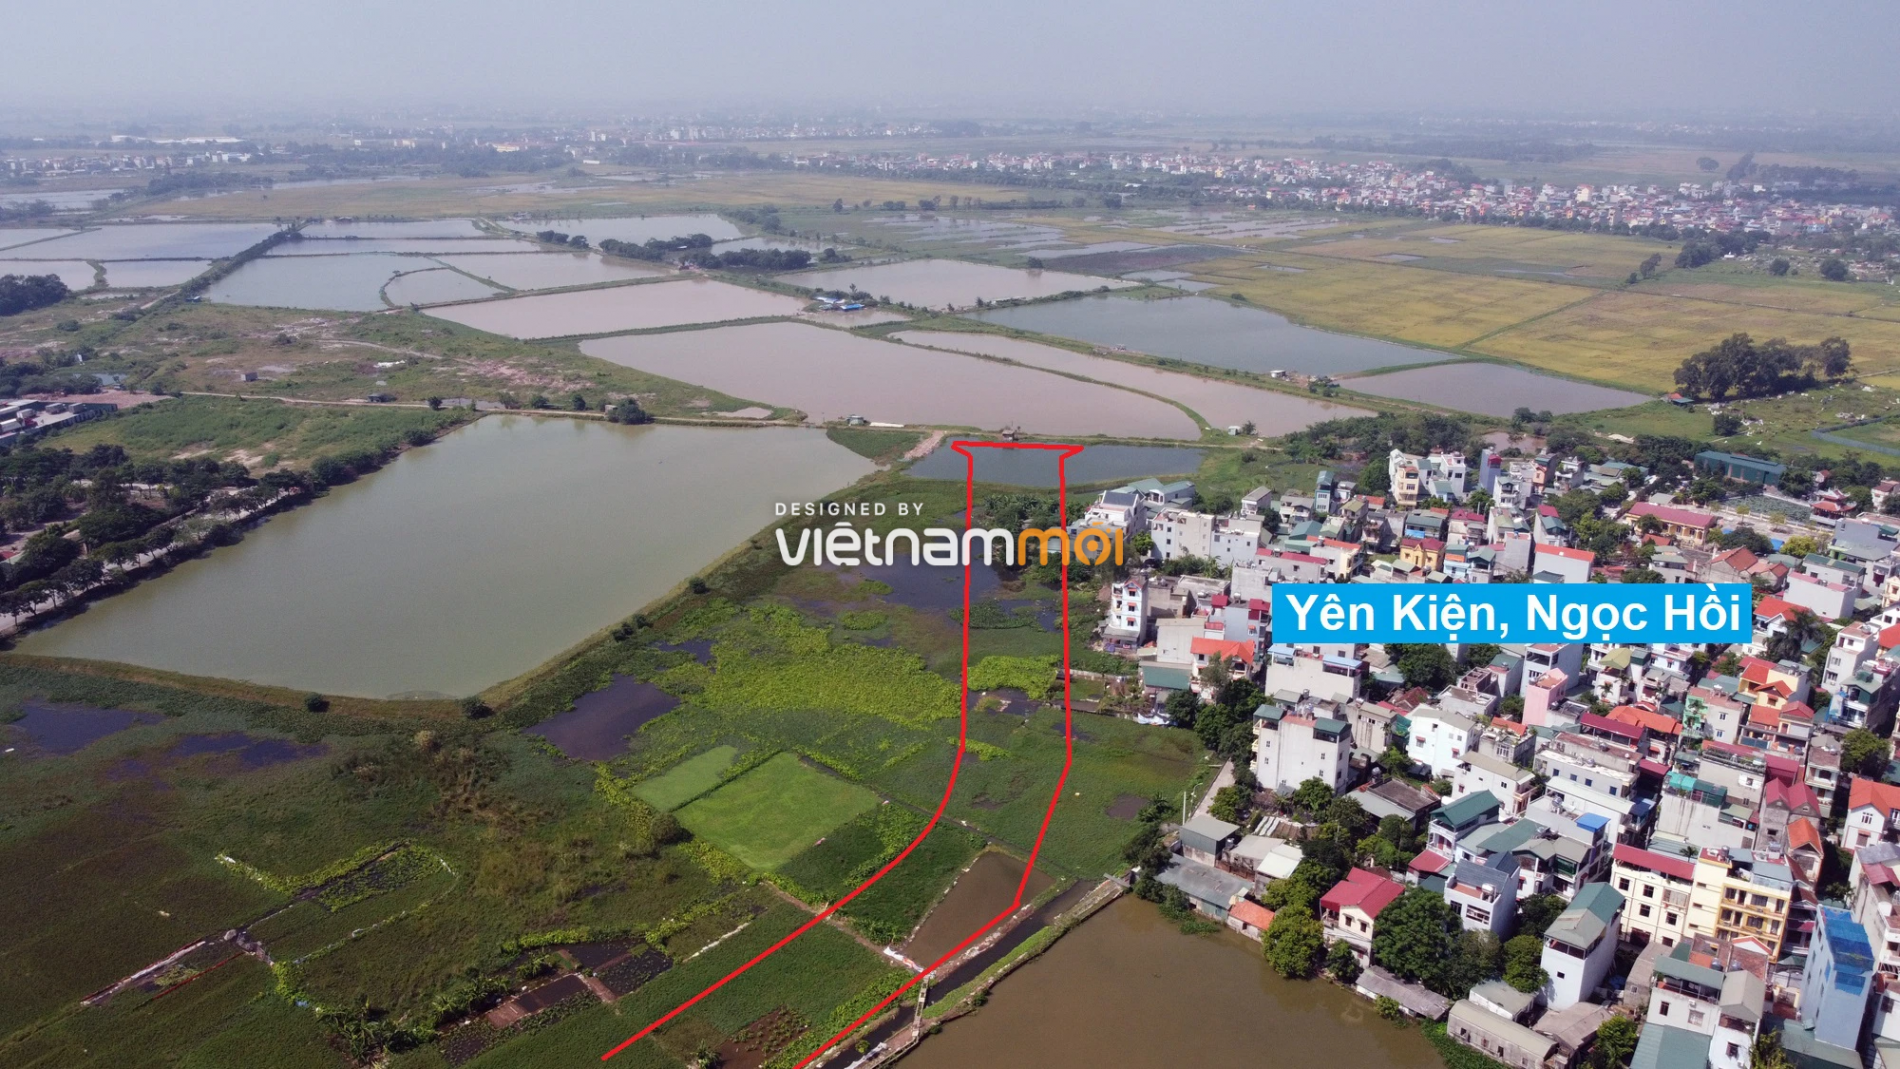 Những khu đất sắp thu hồi để mở đường ở xã Ngọc Hồi, Thanh Trì, Hà Nội (phần 2) - Ảnh 11.